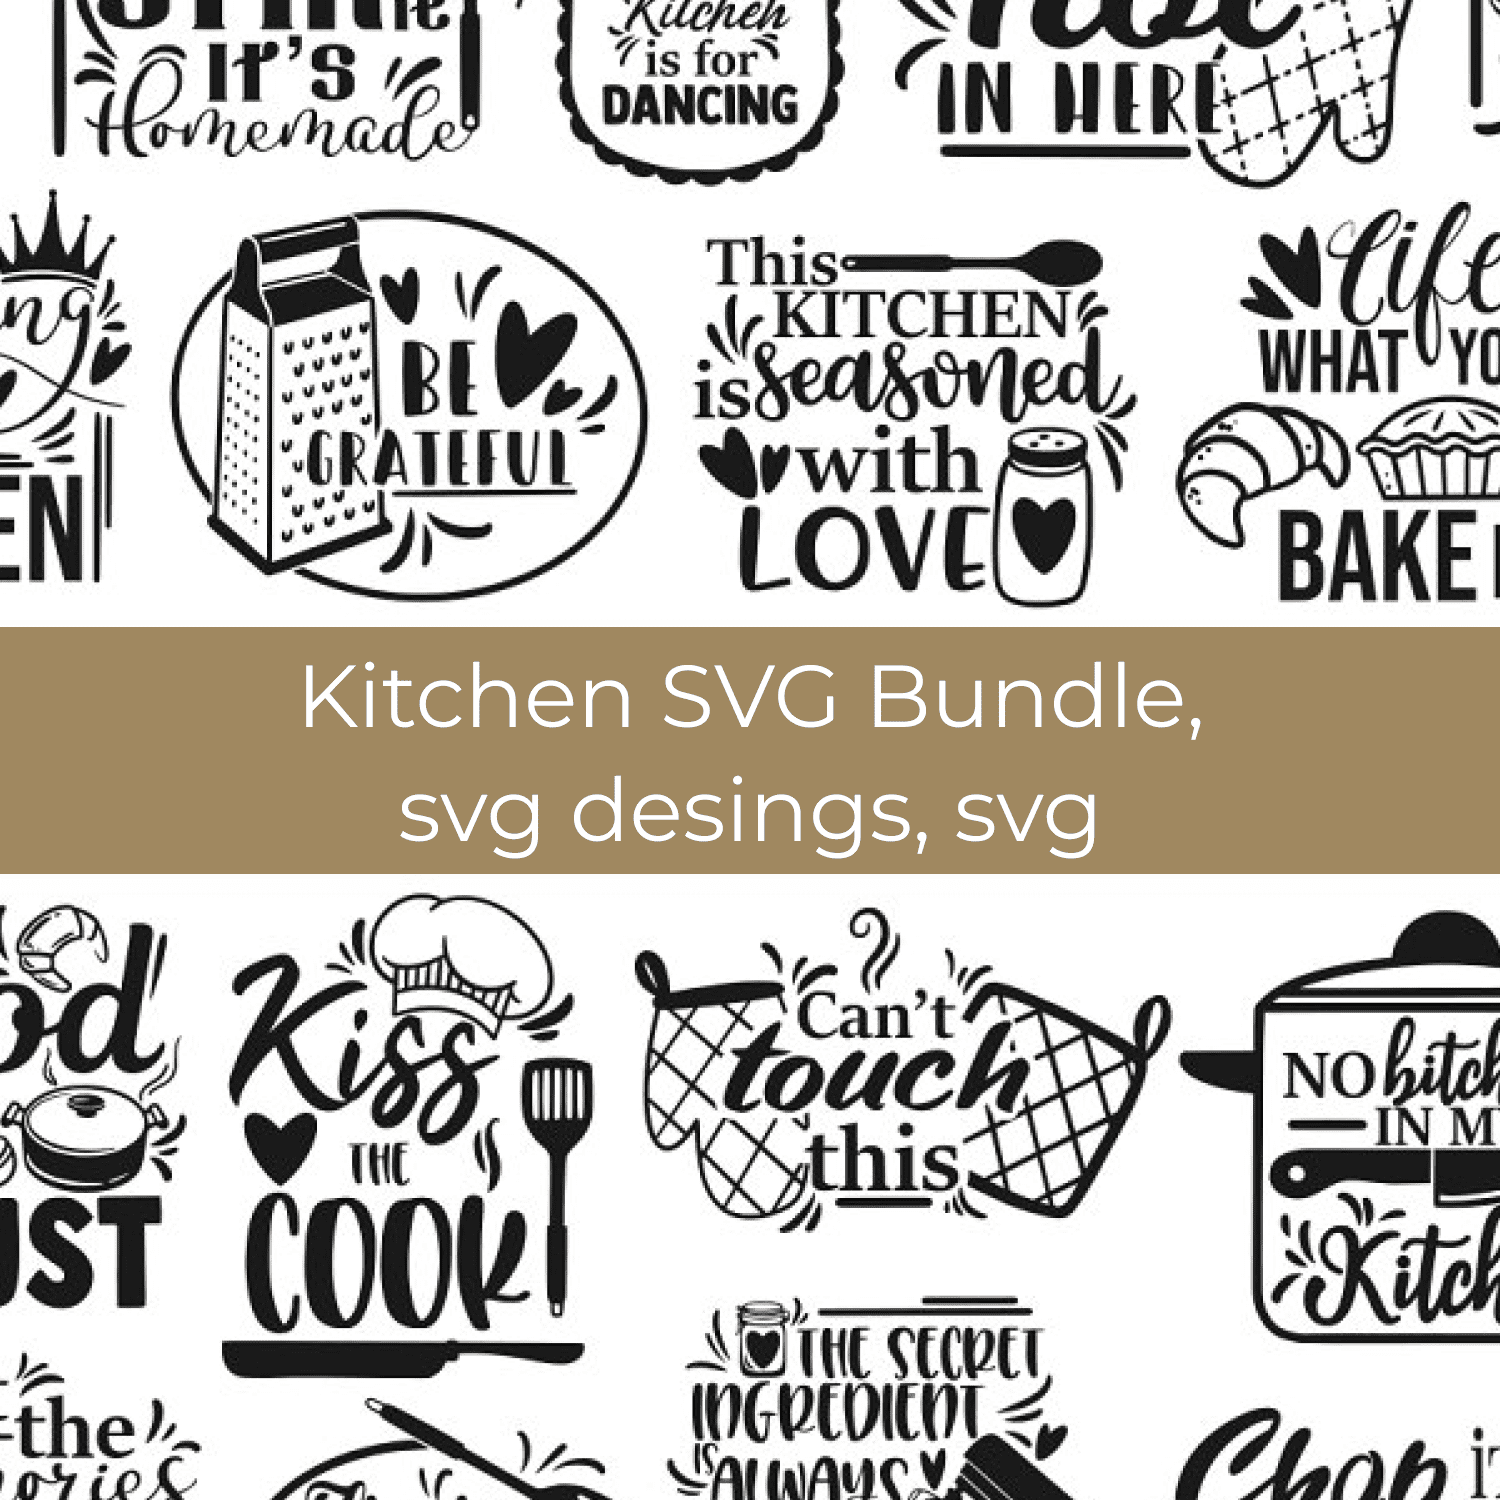 Kitchen SVG Bundle, svg desings, svg.